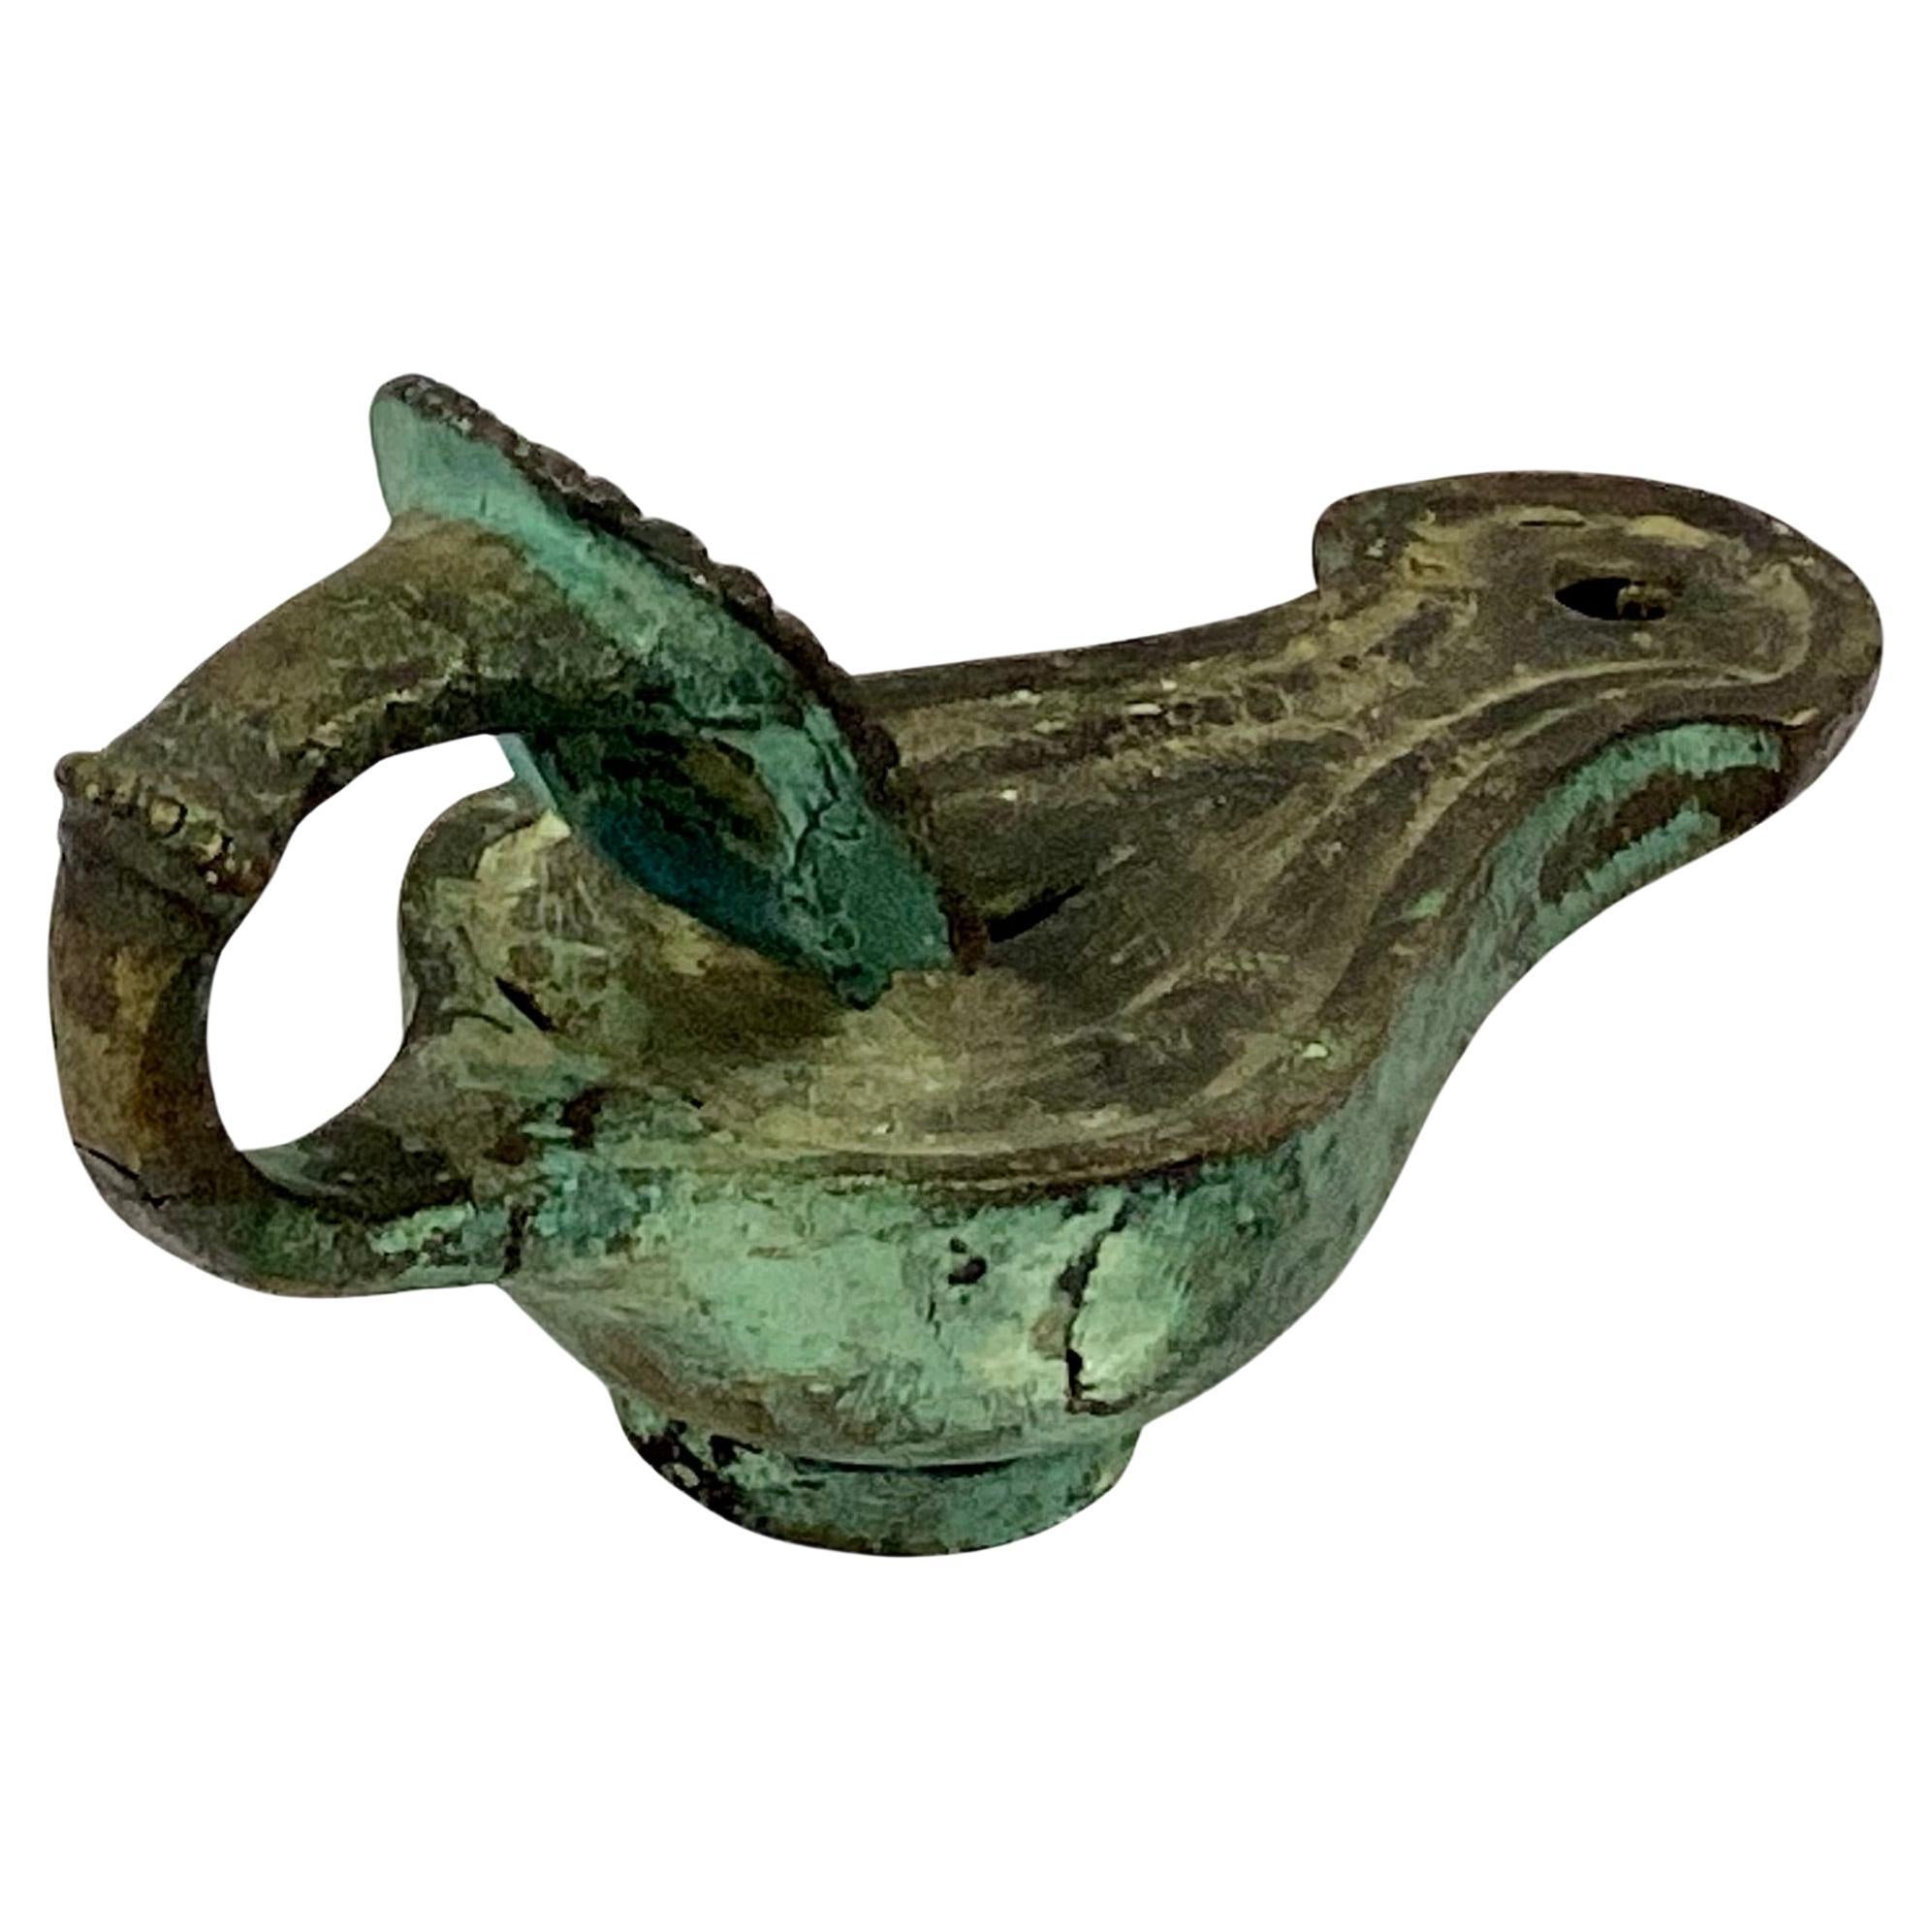 Eine seltene römische Grand-Tour-Öllampe aus Bronzeguss mit birnenförmigem Korpus, der in eine geschwungene Tülle mündet. Der Griff hat eine theatralische Maske mit ausdrucksstarken Gesichtszügen und dichtem, lockigem Haar. Öllampen wurden mit Öl